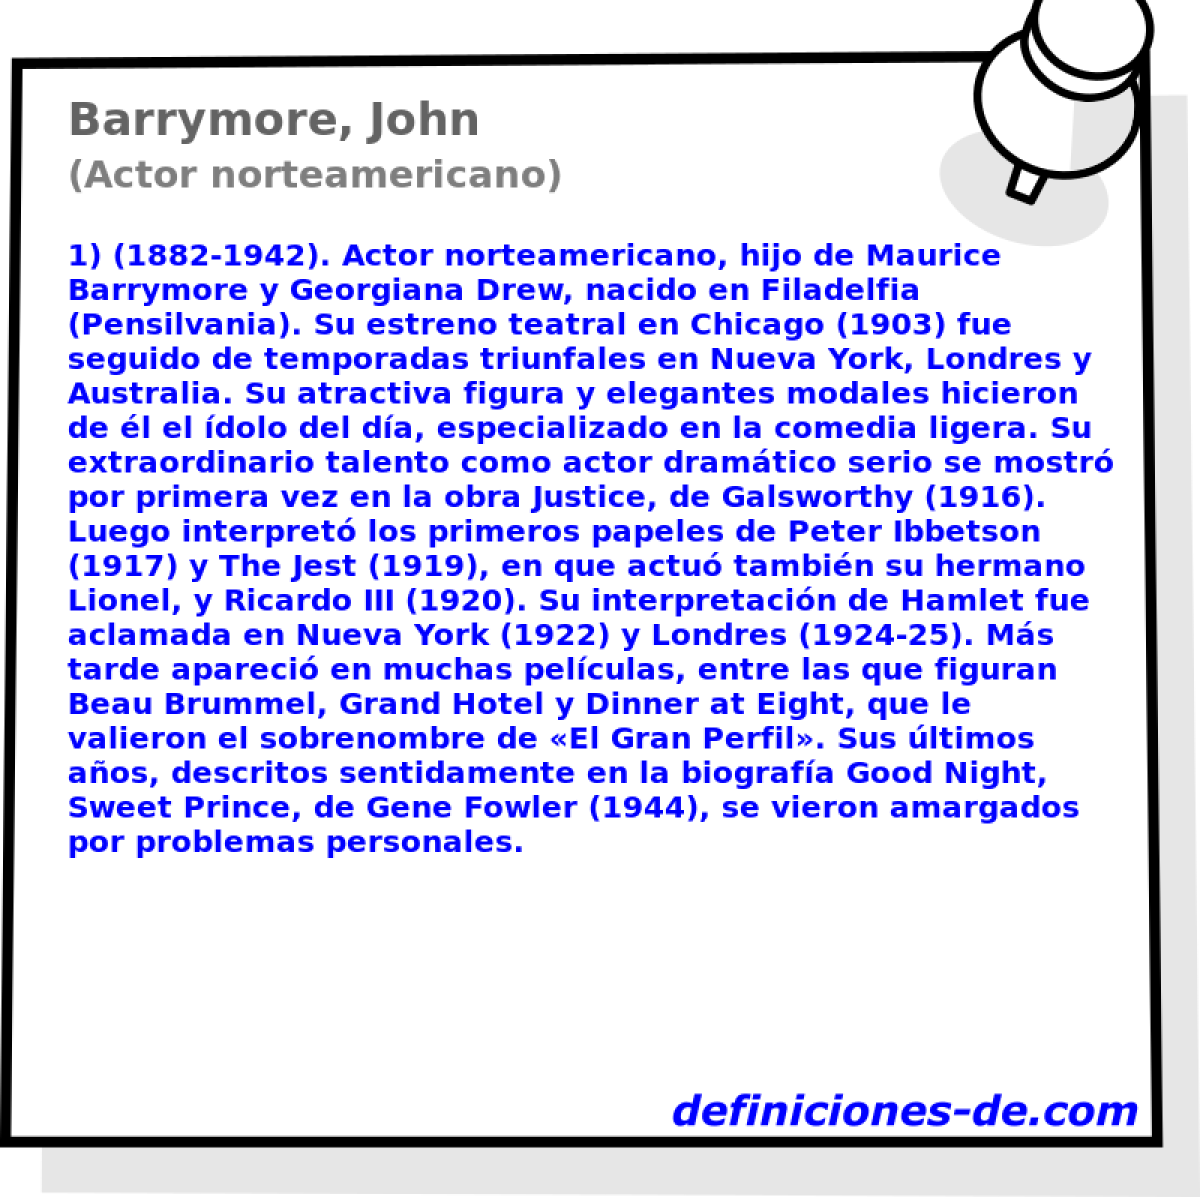 Barrymore, John (Actor norteamericano)